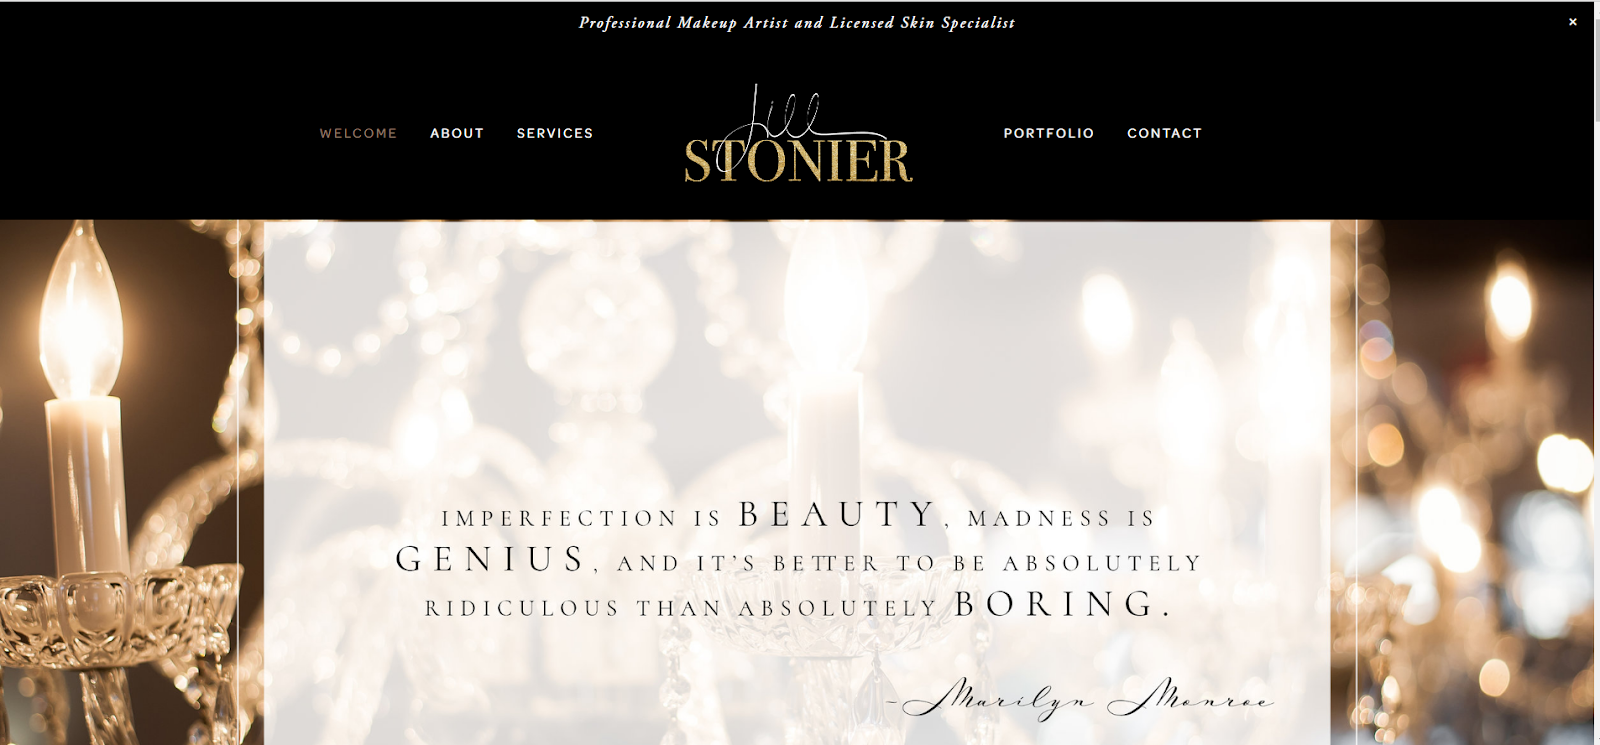 makeup artist website, Jill Stonier